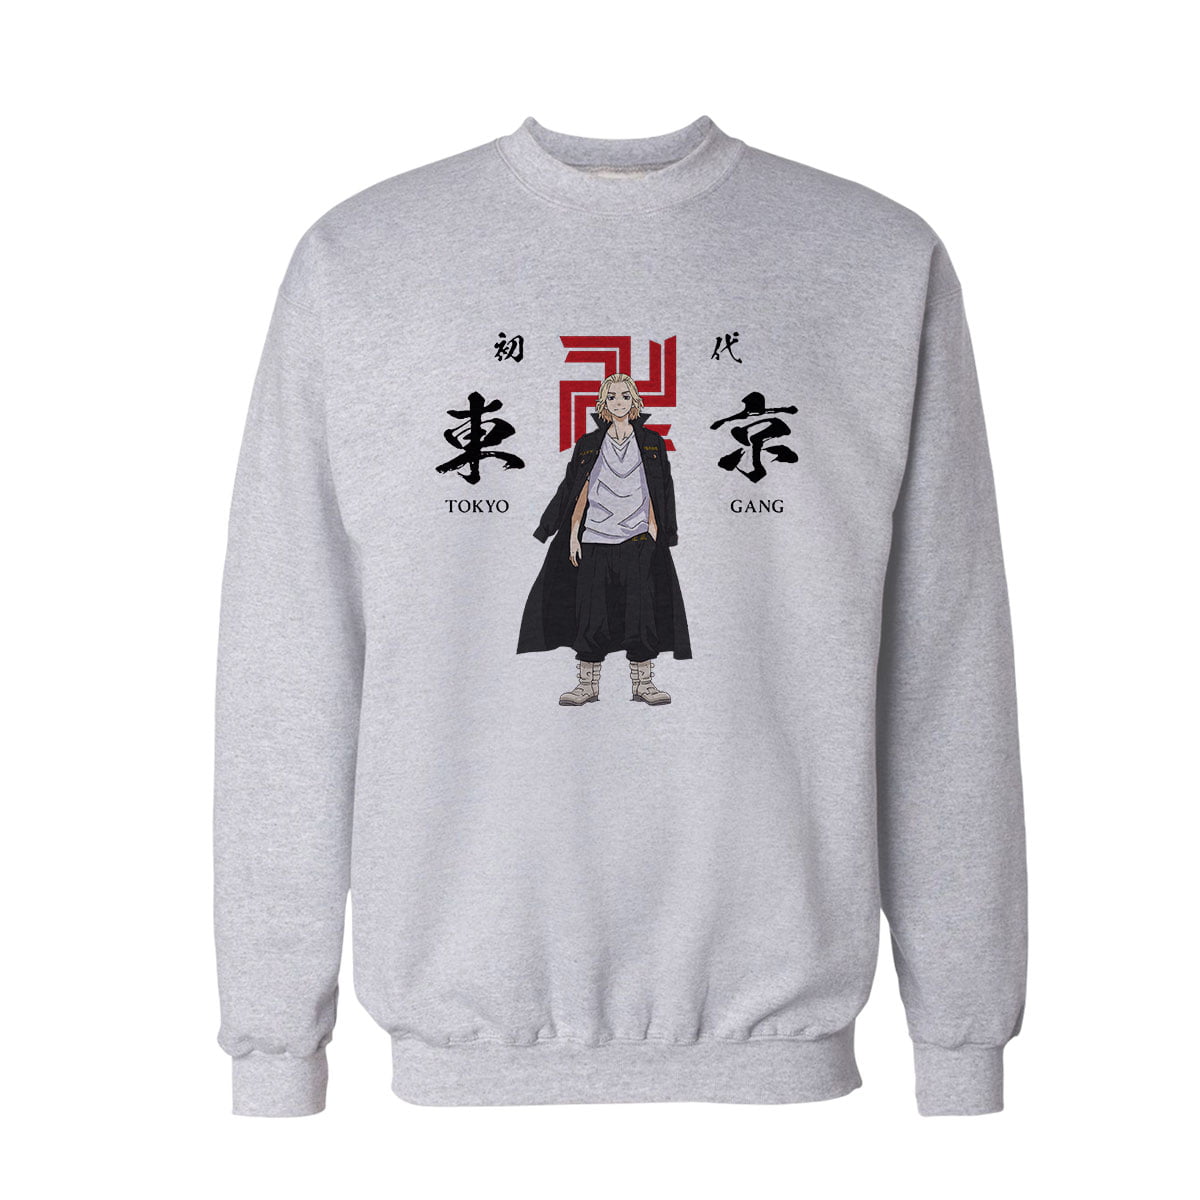 Tokyo ravengers 1 sweatshirt b - tokyo revengers manjiro sano no4 unisex sweatshirt - figurex